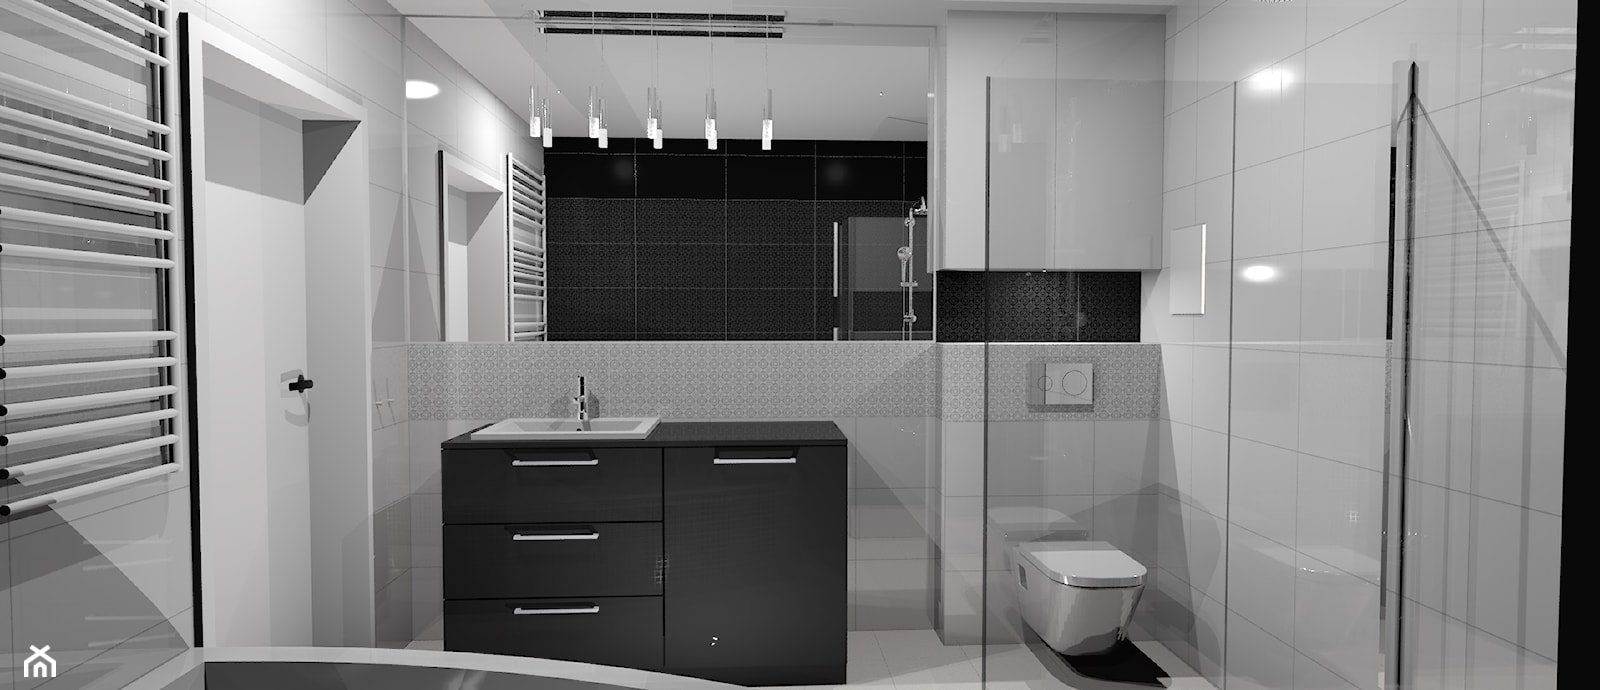 Nowoczesna łazienka Black&White - Łazienka - zdjęcie od Katarzyna Krawczyszyn - Homebook